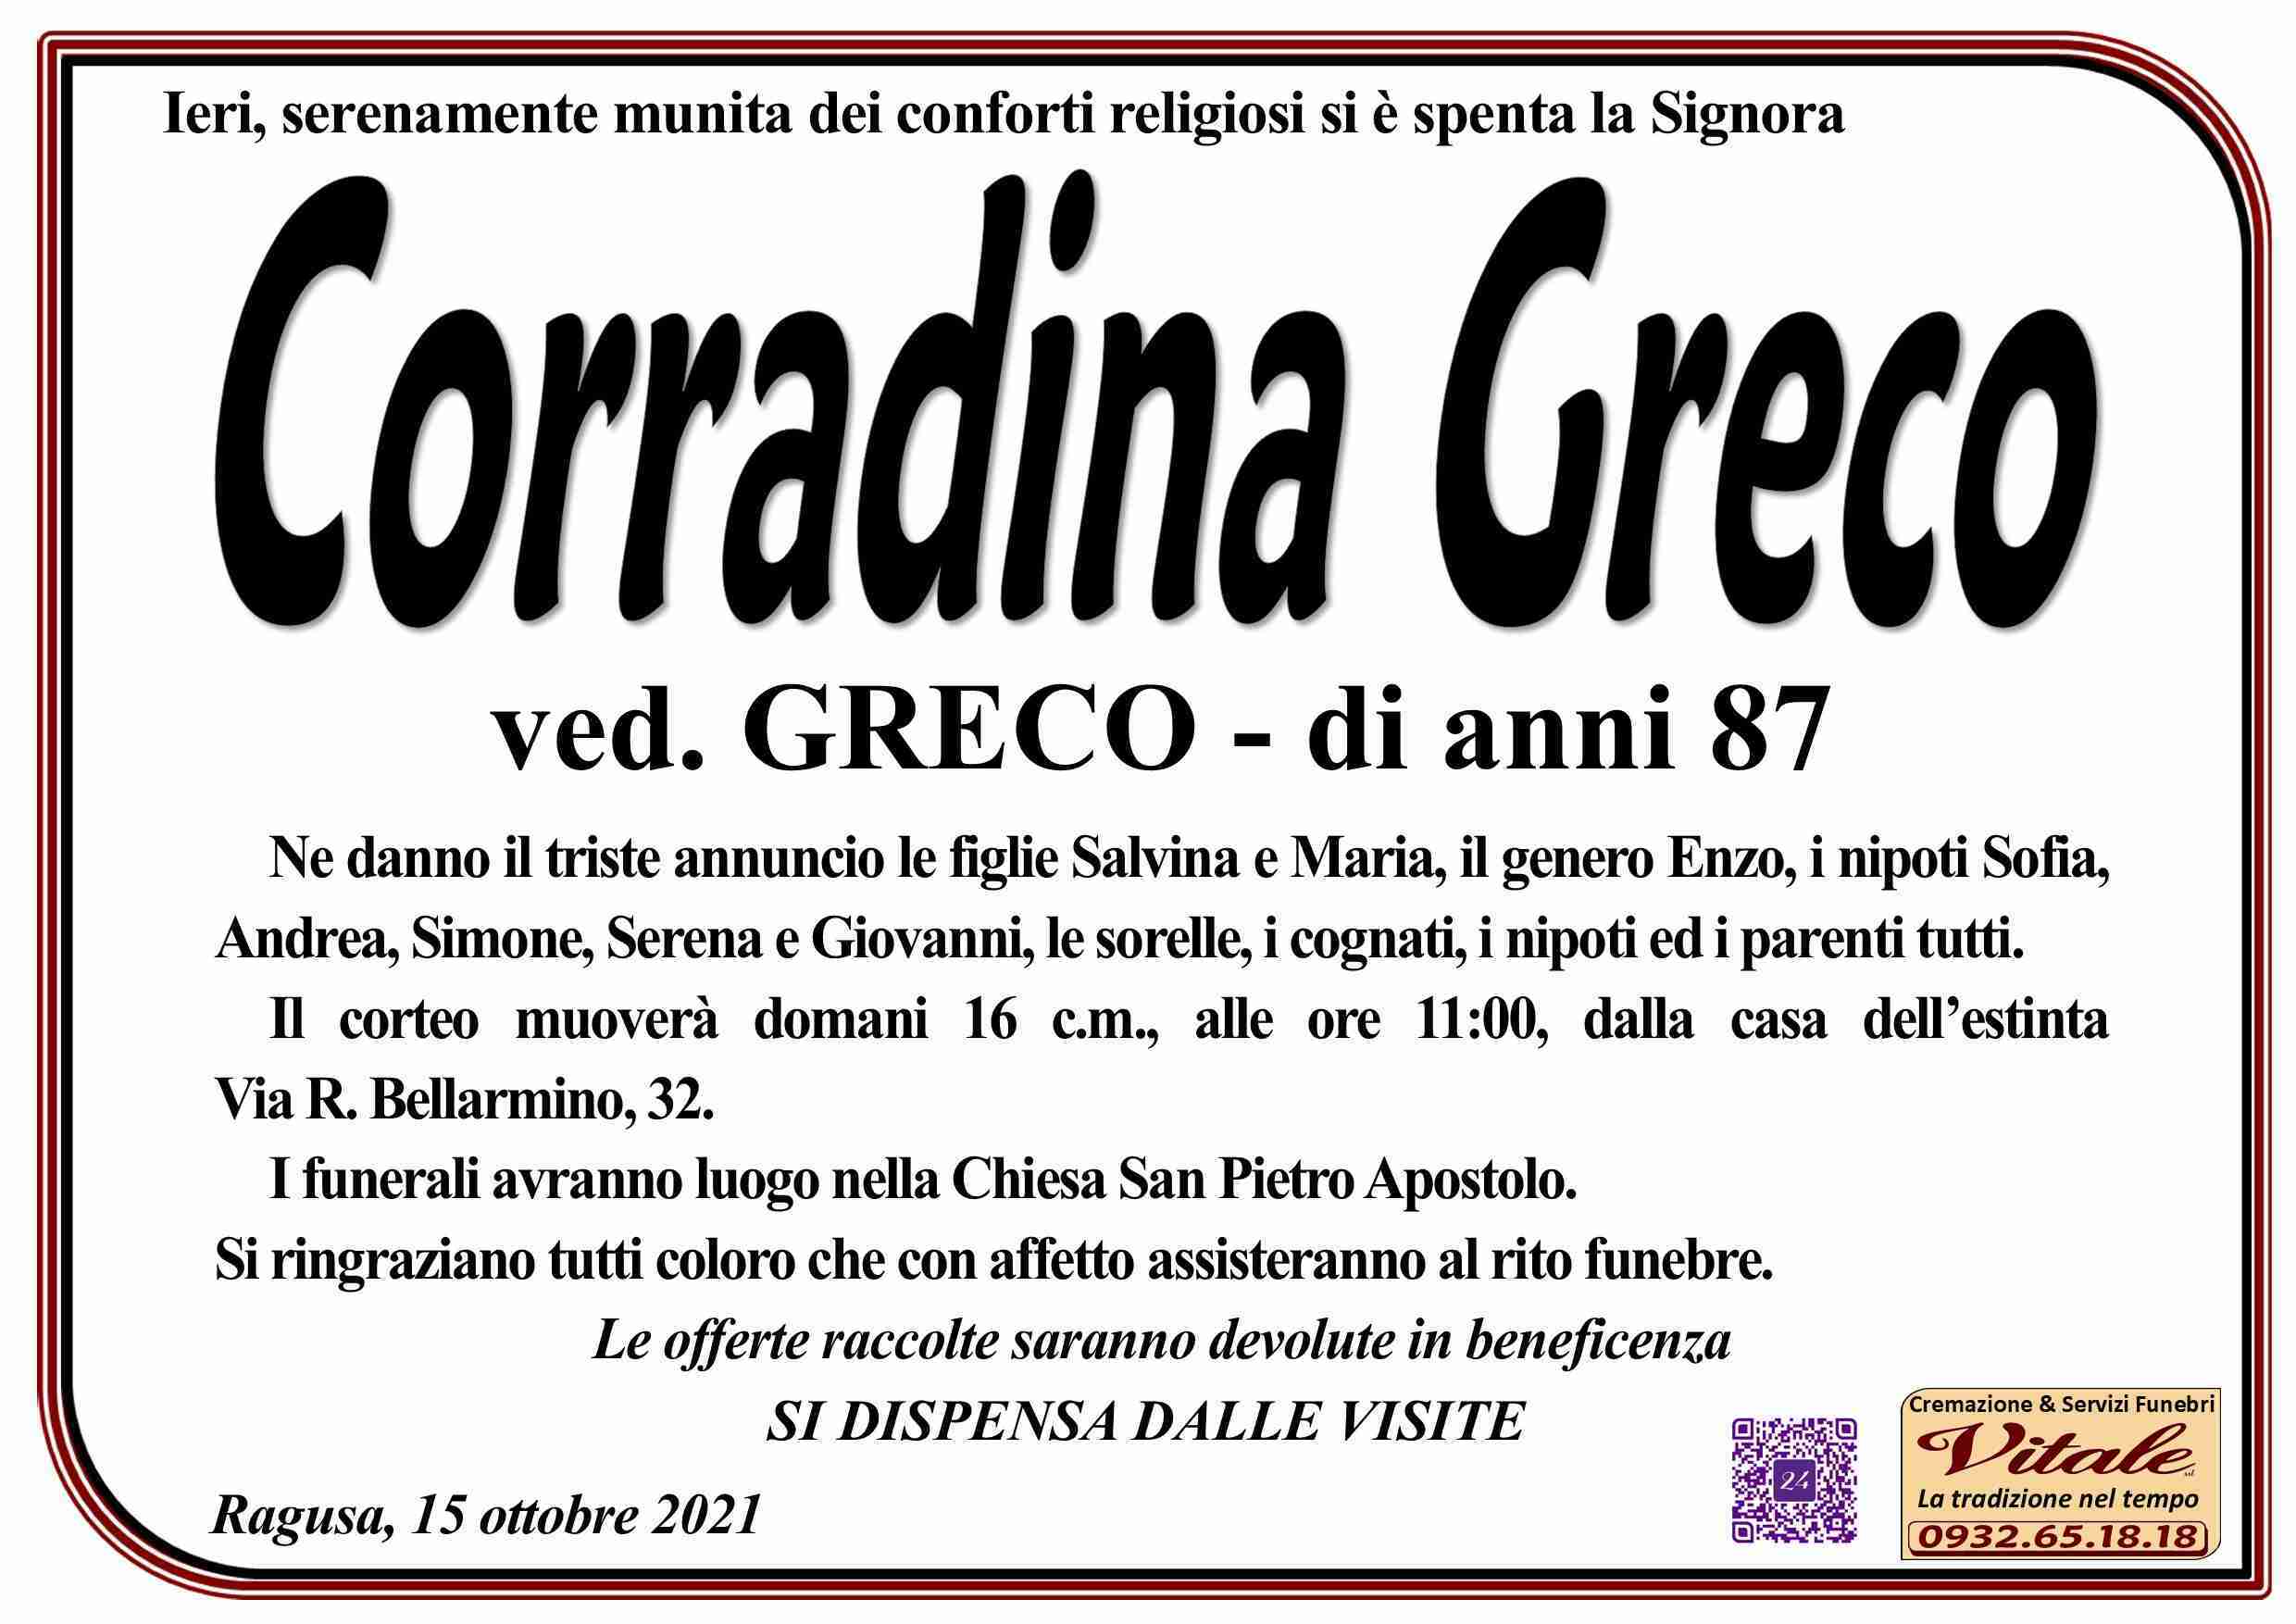 Corradina Greco